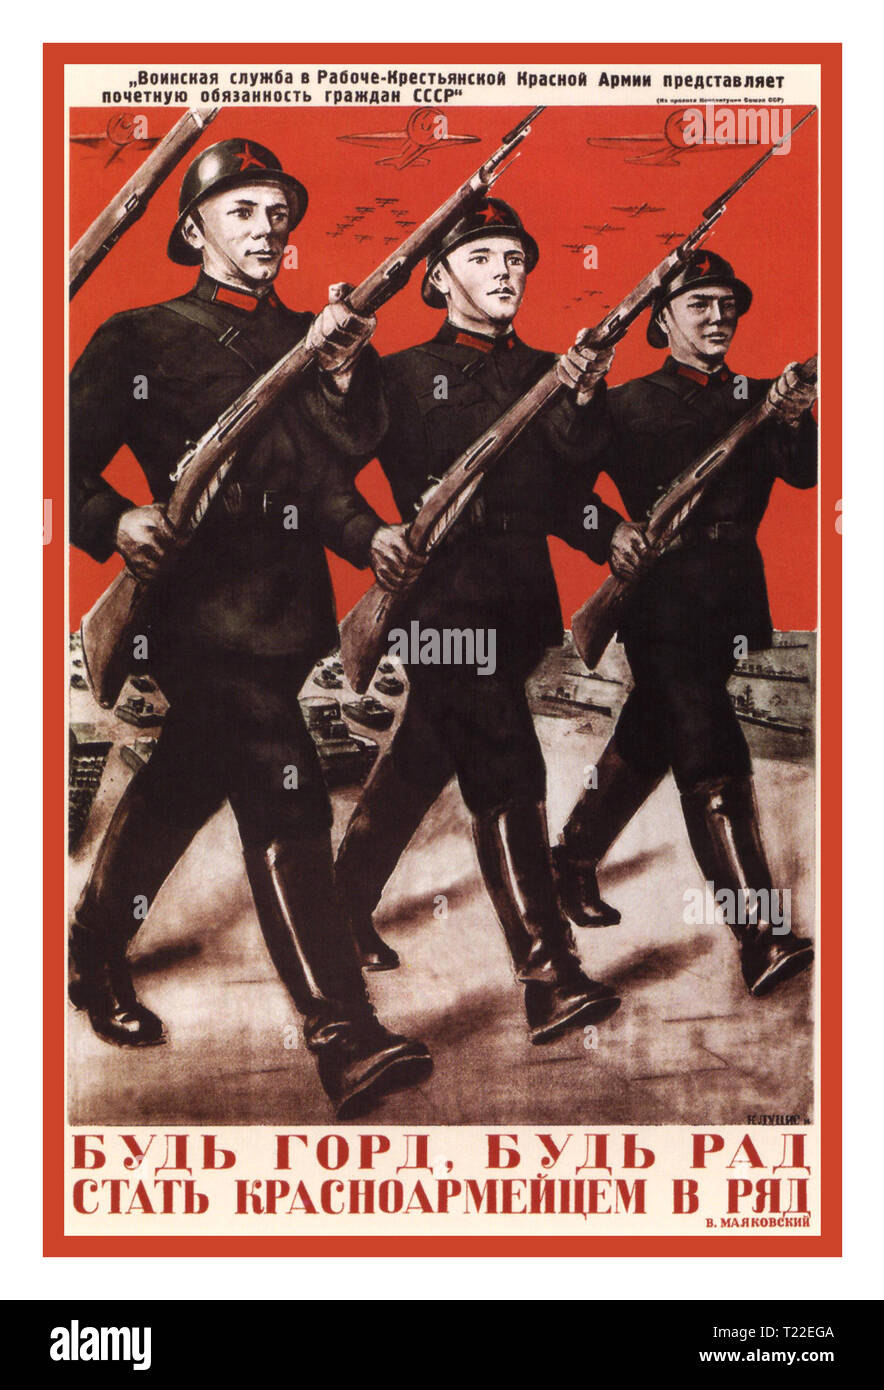 Vintage WW2 affiche de propagande russe Grande guerre patriotique (affiches de l'URSS) Fédération de WW2 1930 'être heureux et fiers de se tenir dans le rang, avec des soldats de l'Armée Rouge à vos côtés' Vintage poster soviétique à propos de la Grande guerre patriotique de l'URSS et l'Armée Rouge à la victoire sur l'Allemagne Nazi fasciste. Gustav Klucis lithographie couleur Banque D'Images